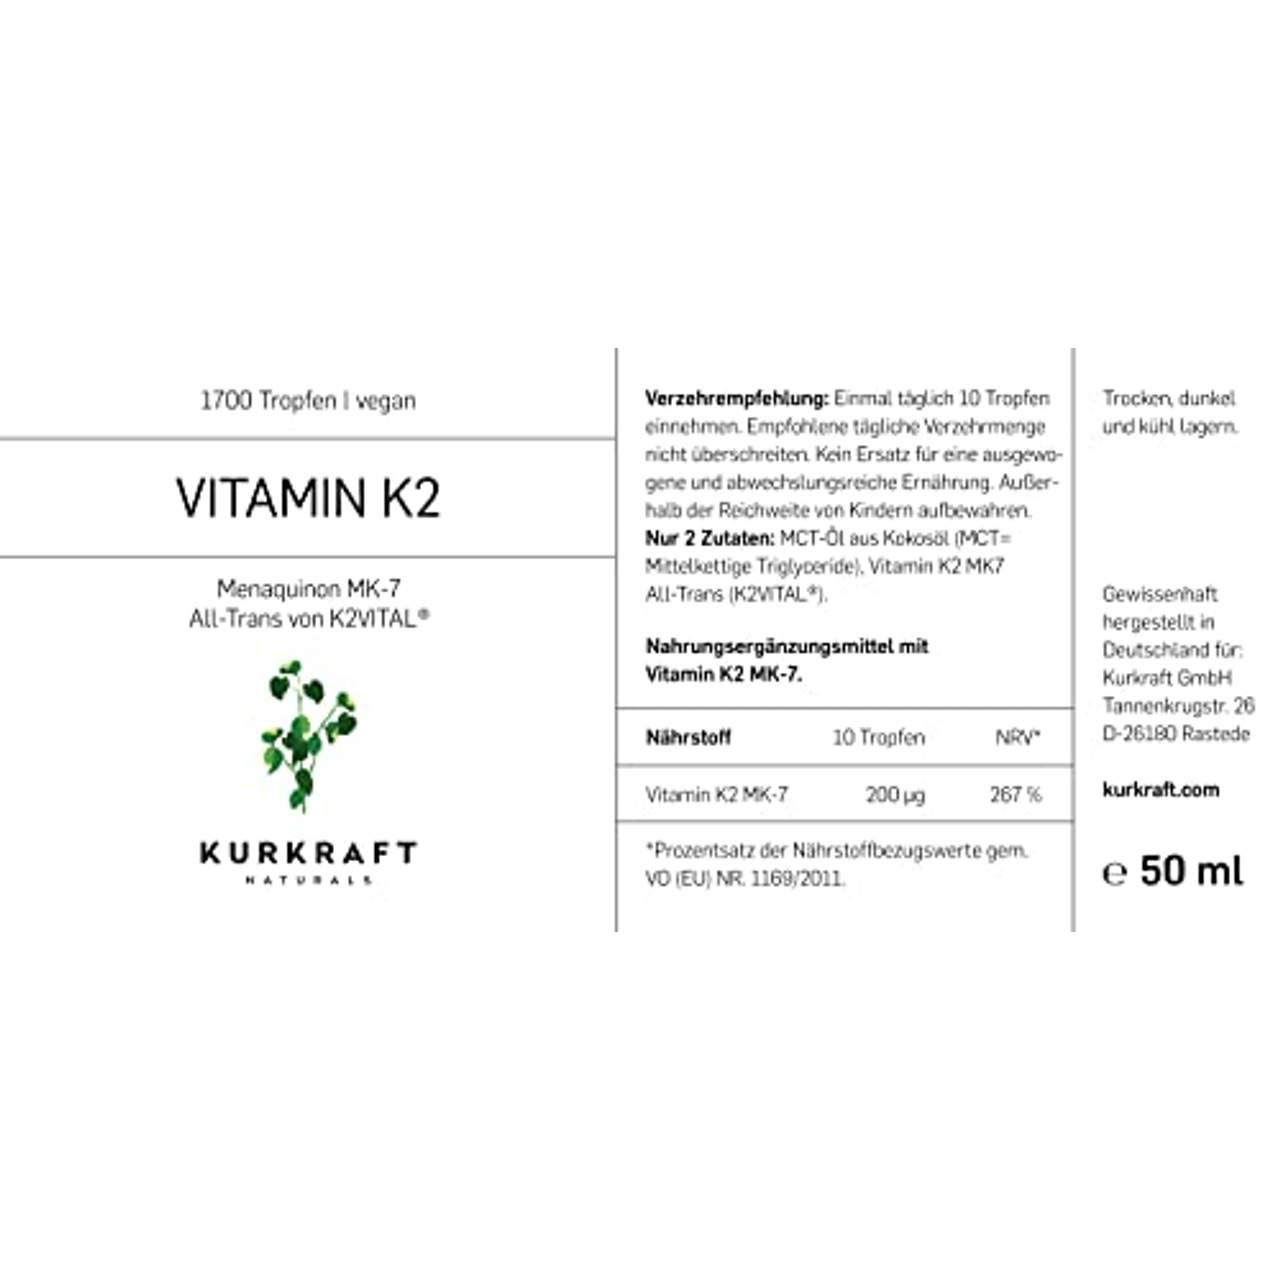 Kurkraft Vitamin K2 MK-7-200µg